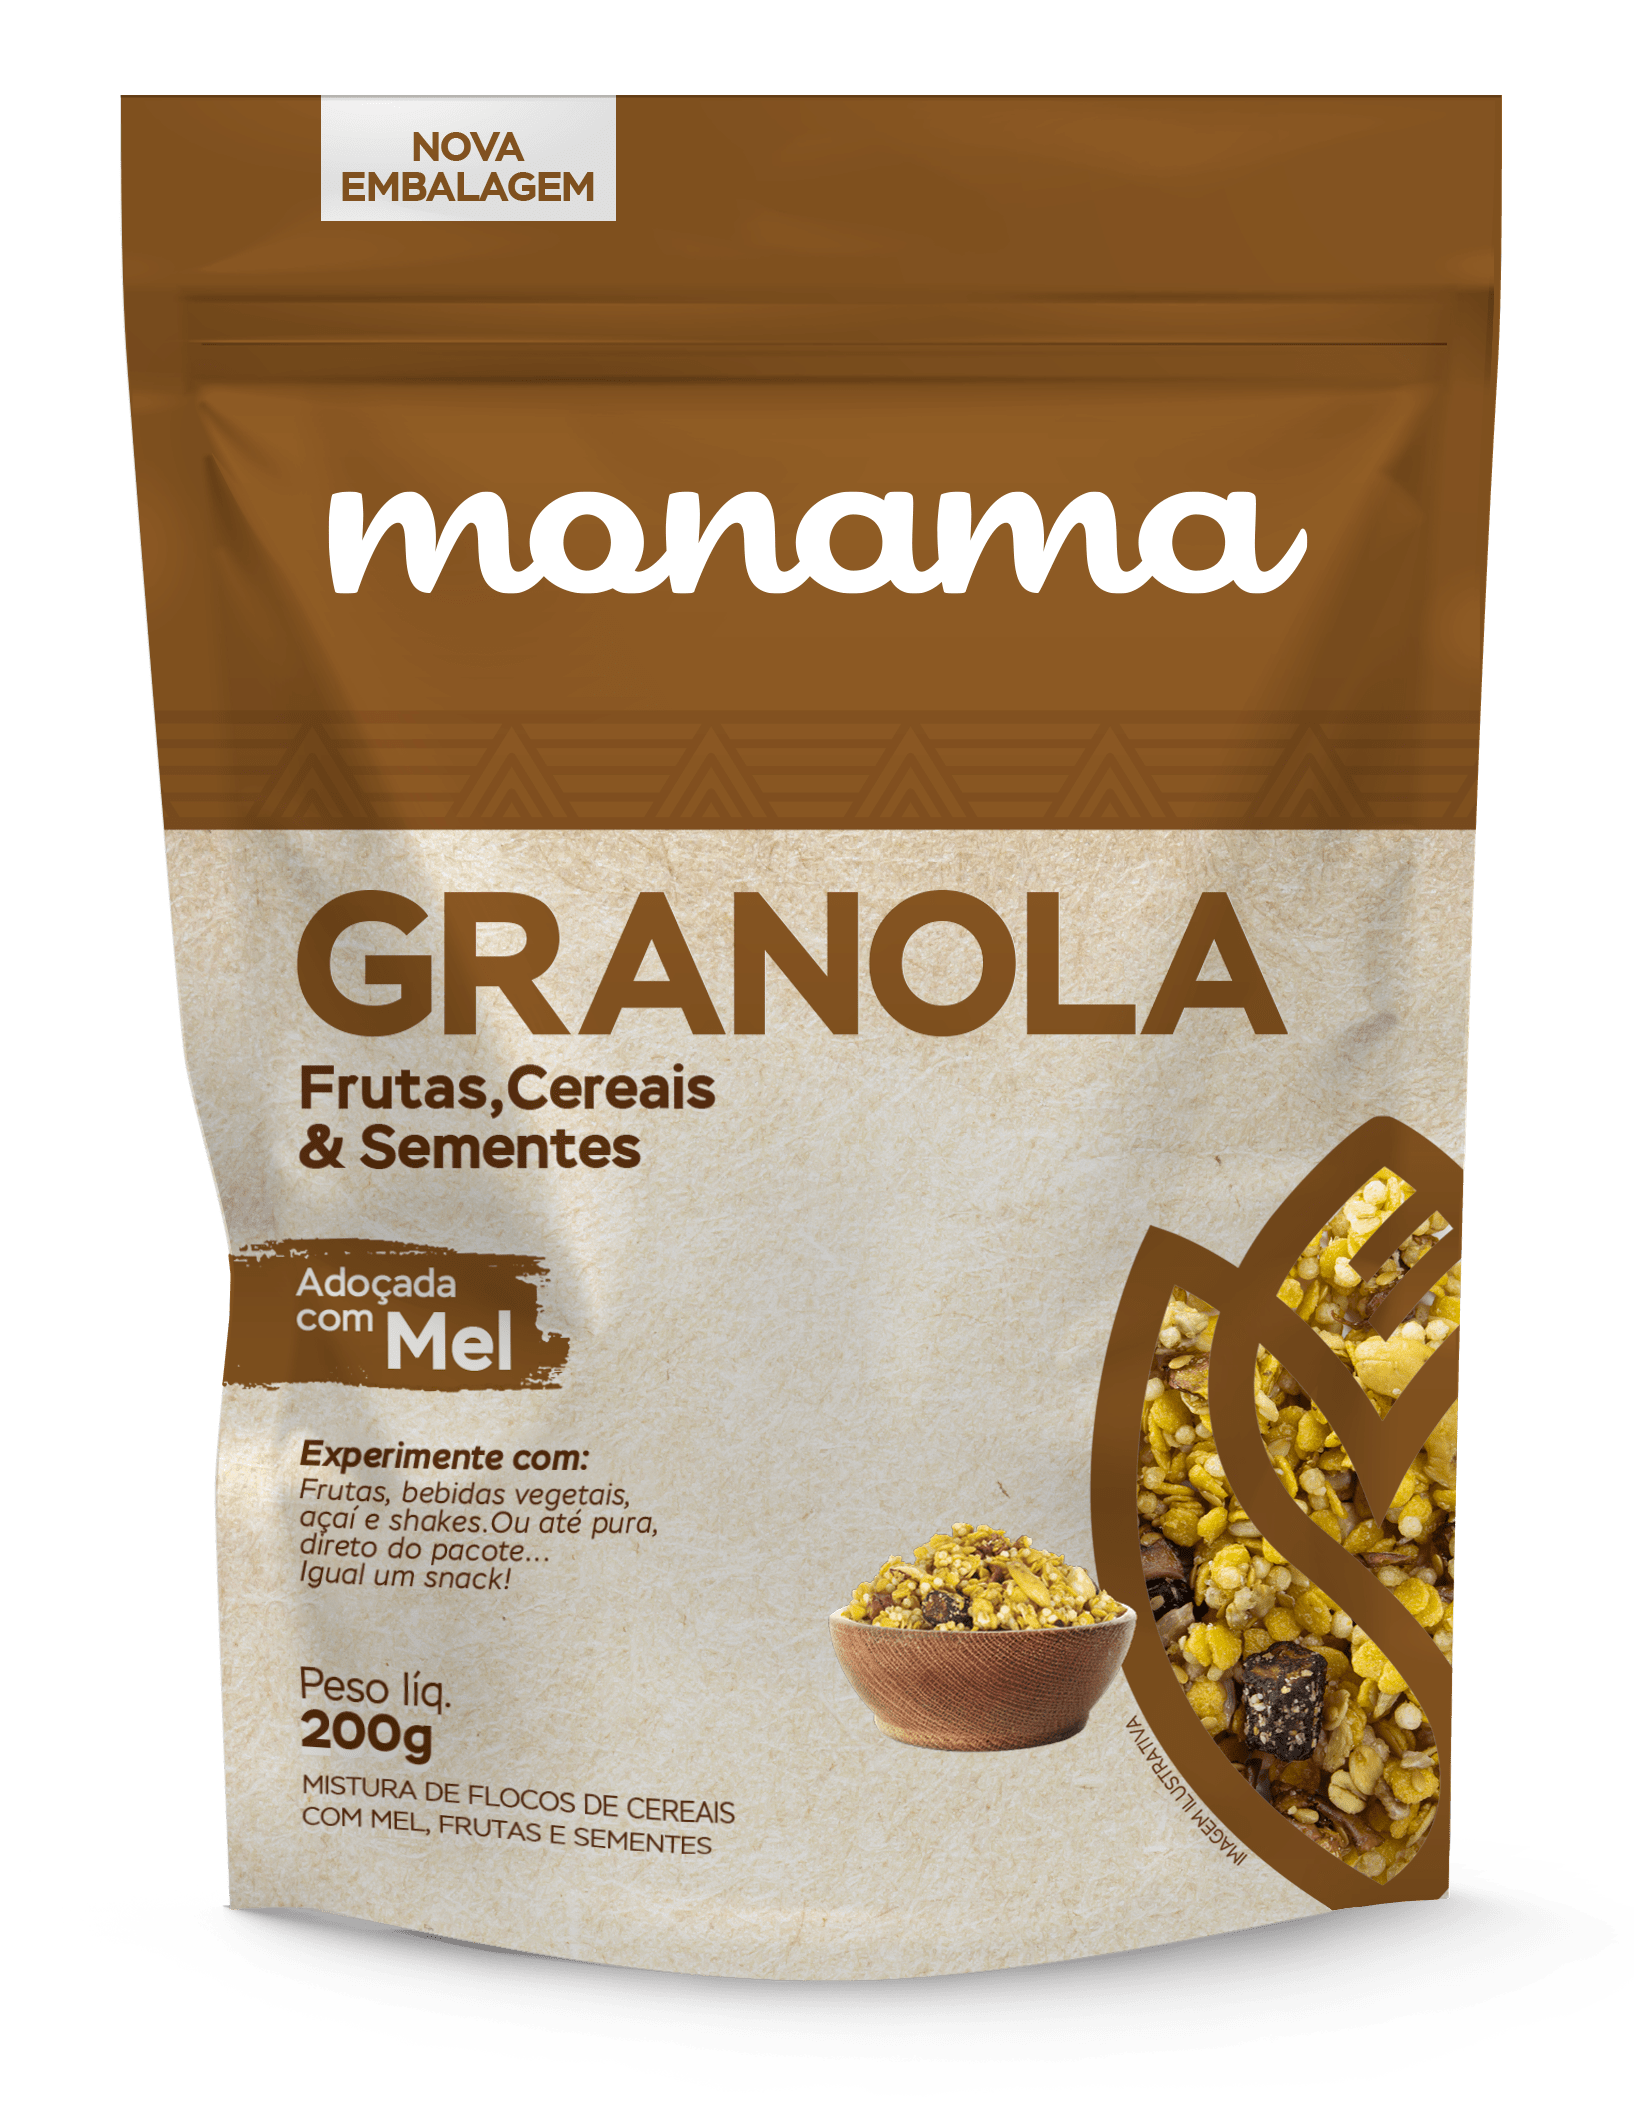 Nova embalagem granola frutas